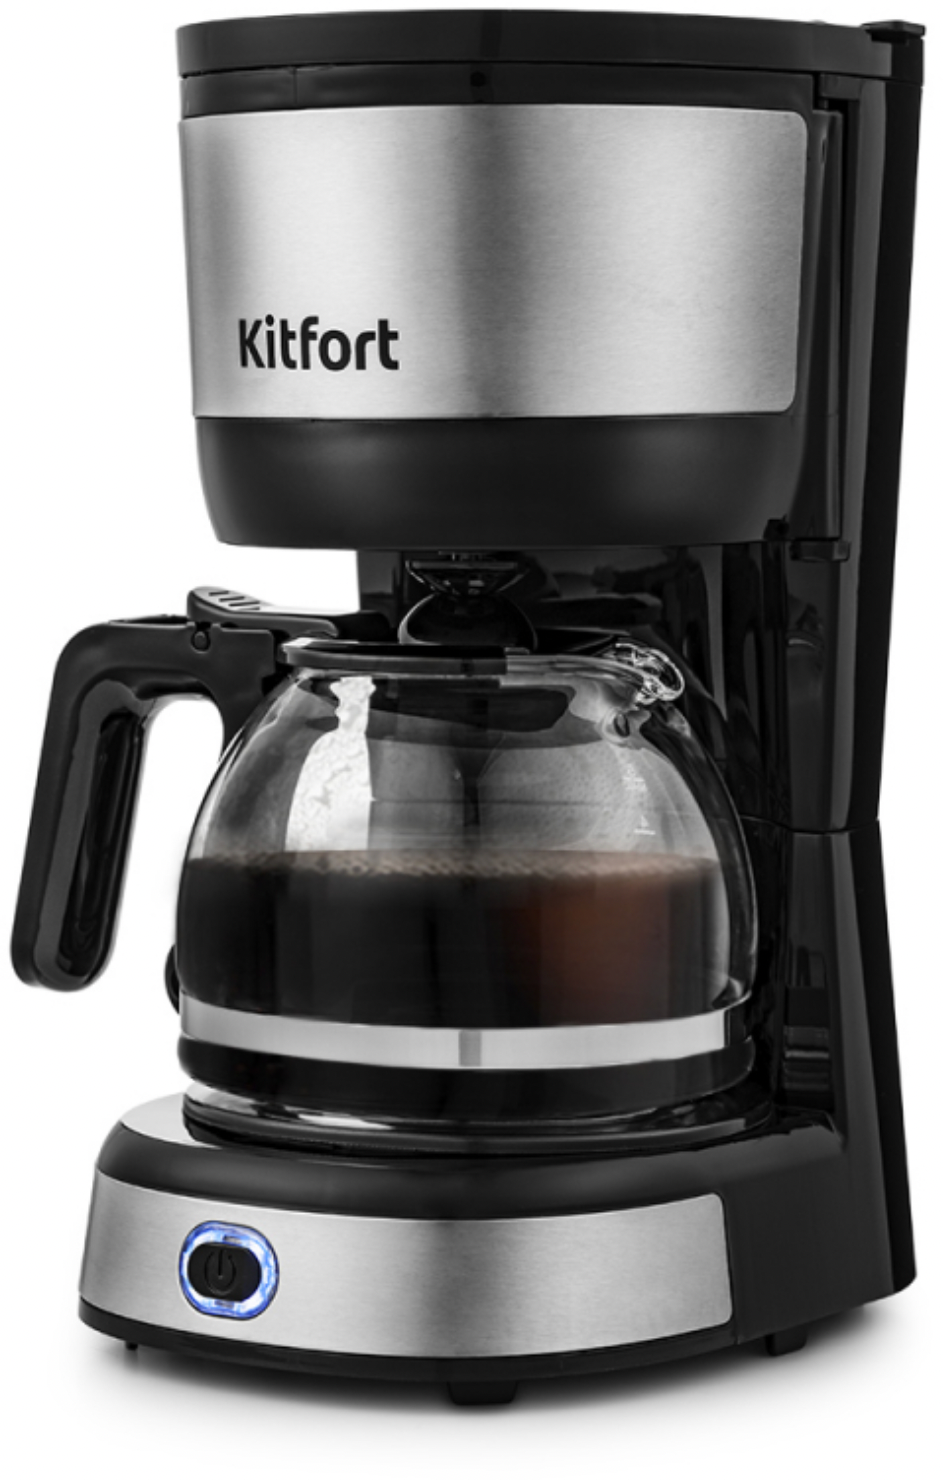 Капельная кофеварка Kitfort, поддержание температуры, автоотключение при неиспользовании, одновременное приготовление двух чашек